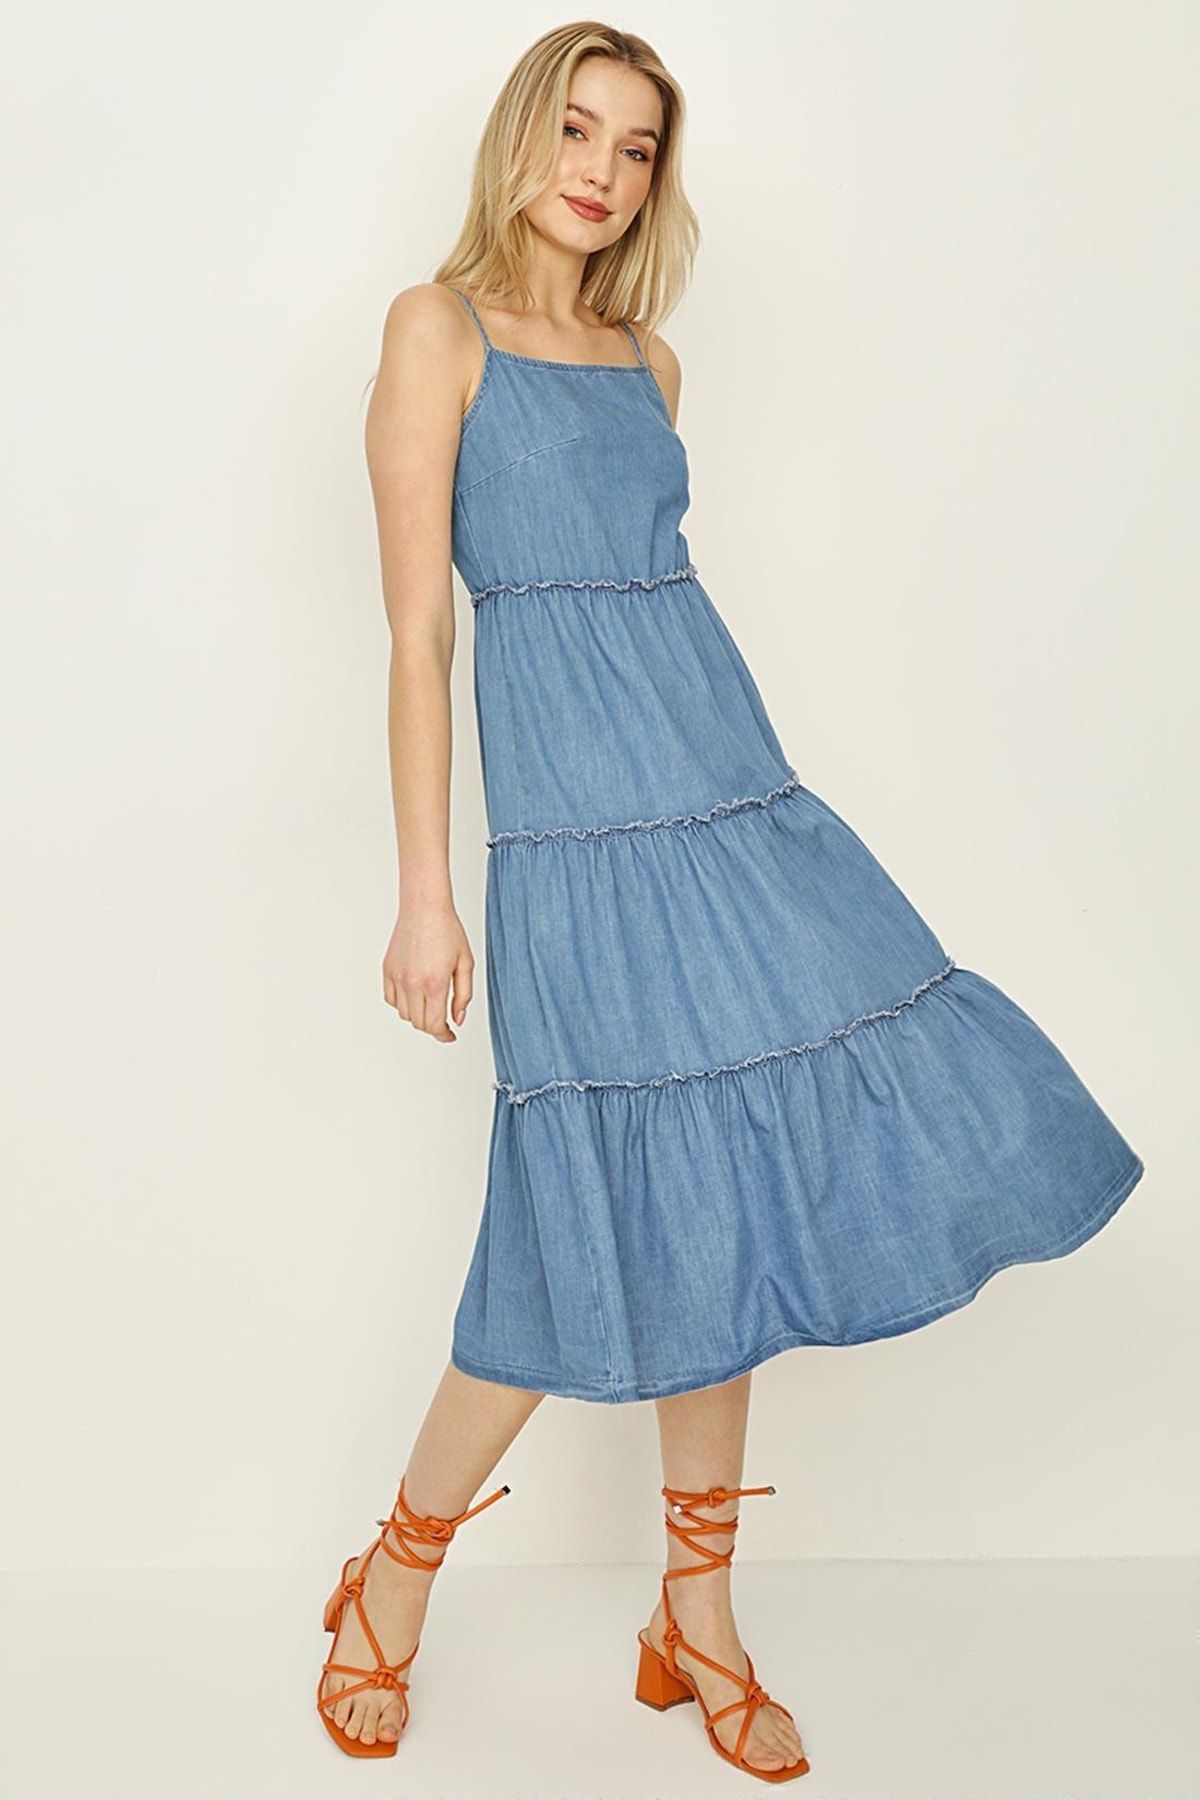 Select Moda Kadın Mavi Askılı Bloklu Denim Elbise